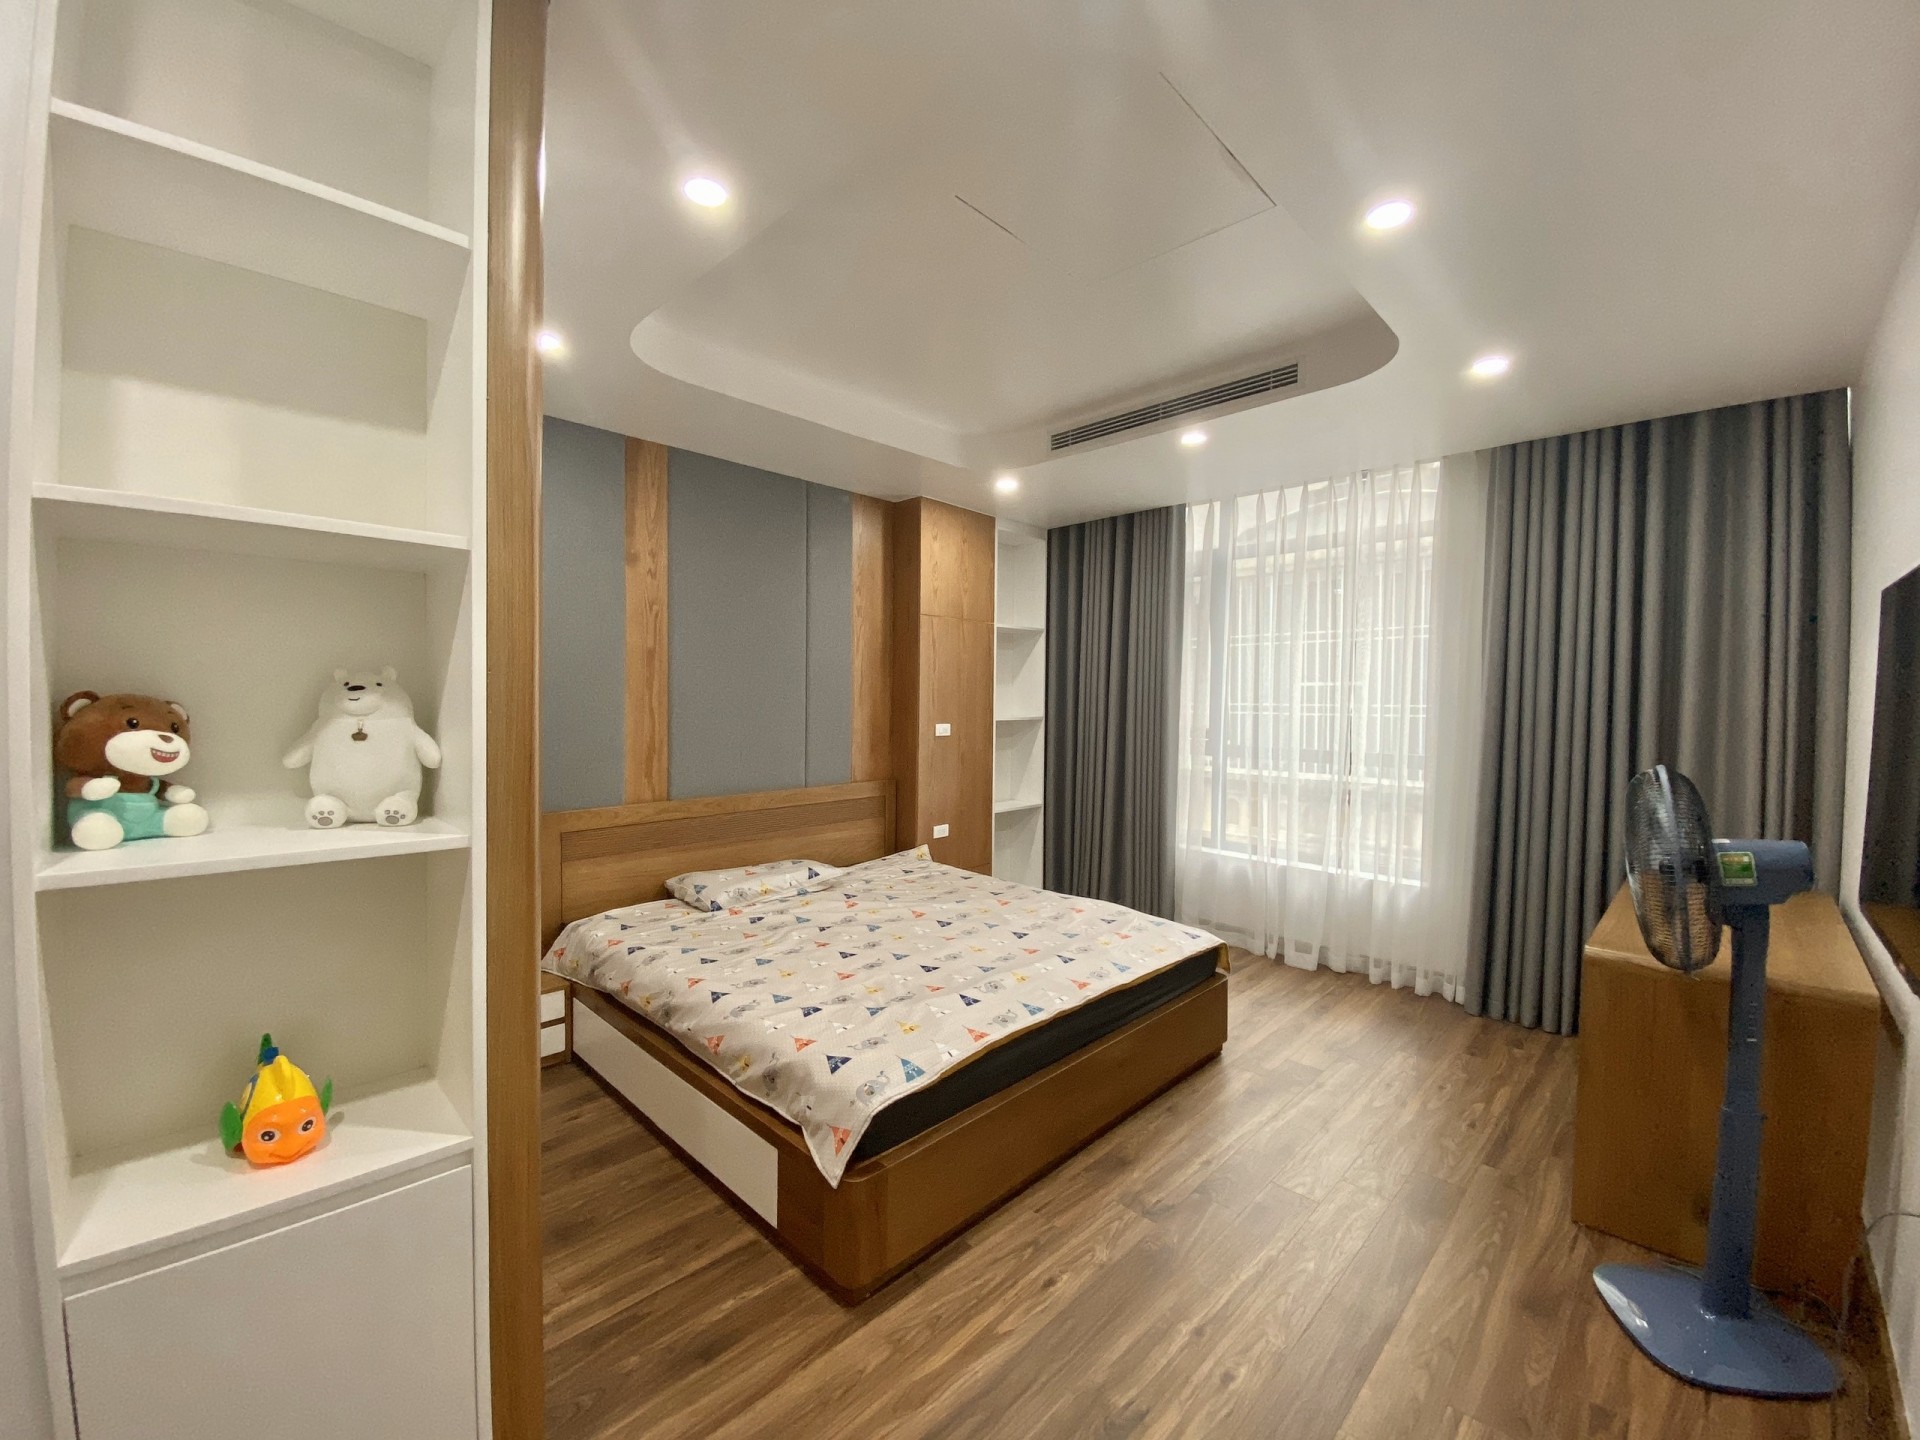 
Phòng ngủ tại các tầng trên, tiếp tục là phong cách tối giản, hữu dụng. Sàn gỗ cũng là gỗ sồi nhập khẩu, ấm áp về mùa đông và mát mẻ về mùa hè.
